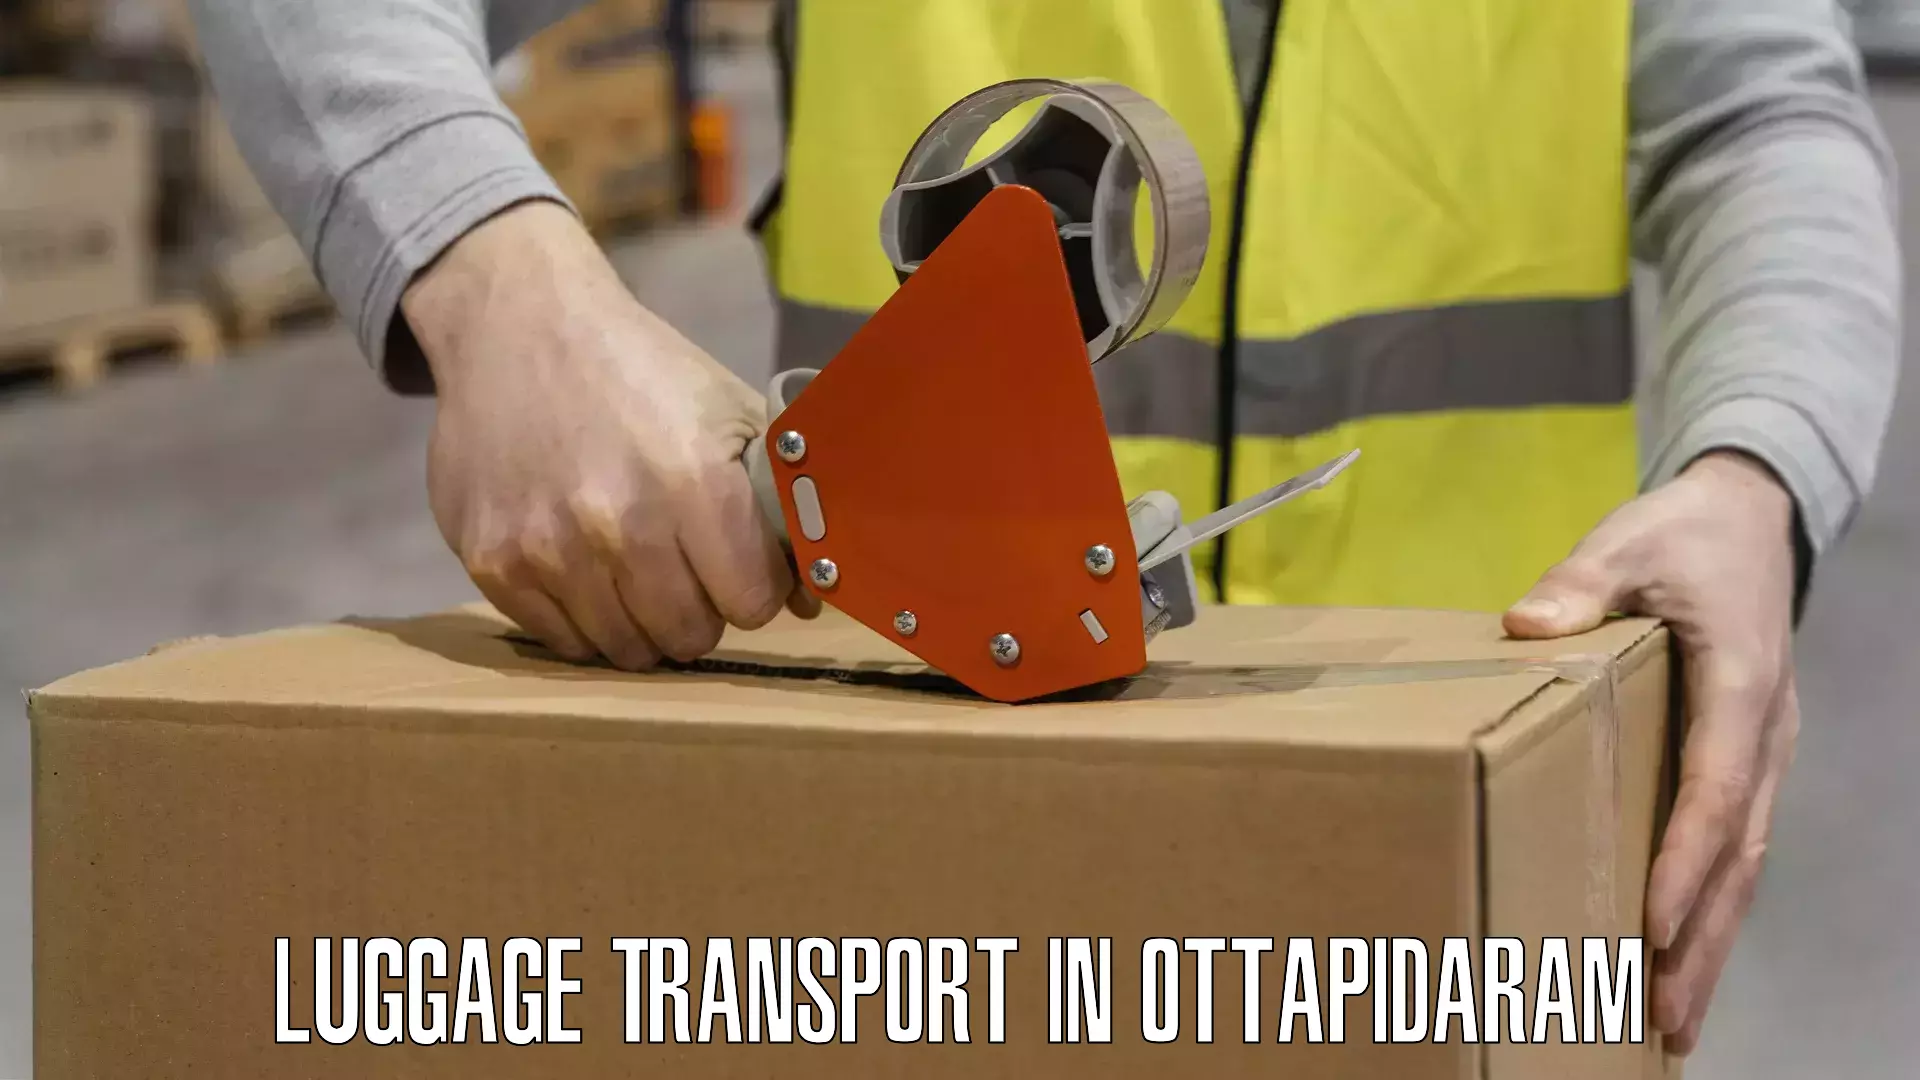 Luggage transport rates in Ottapidaram